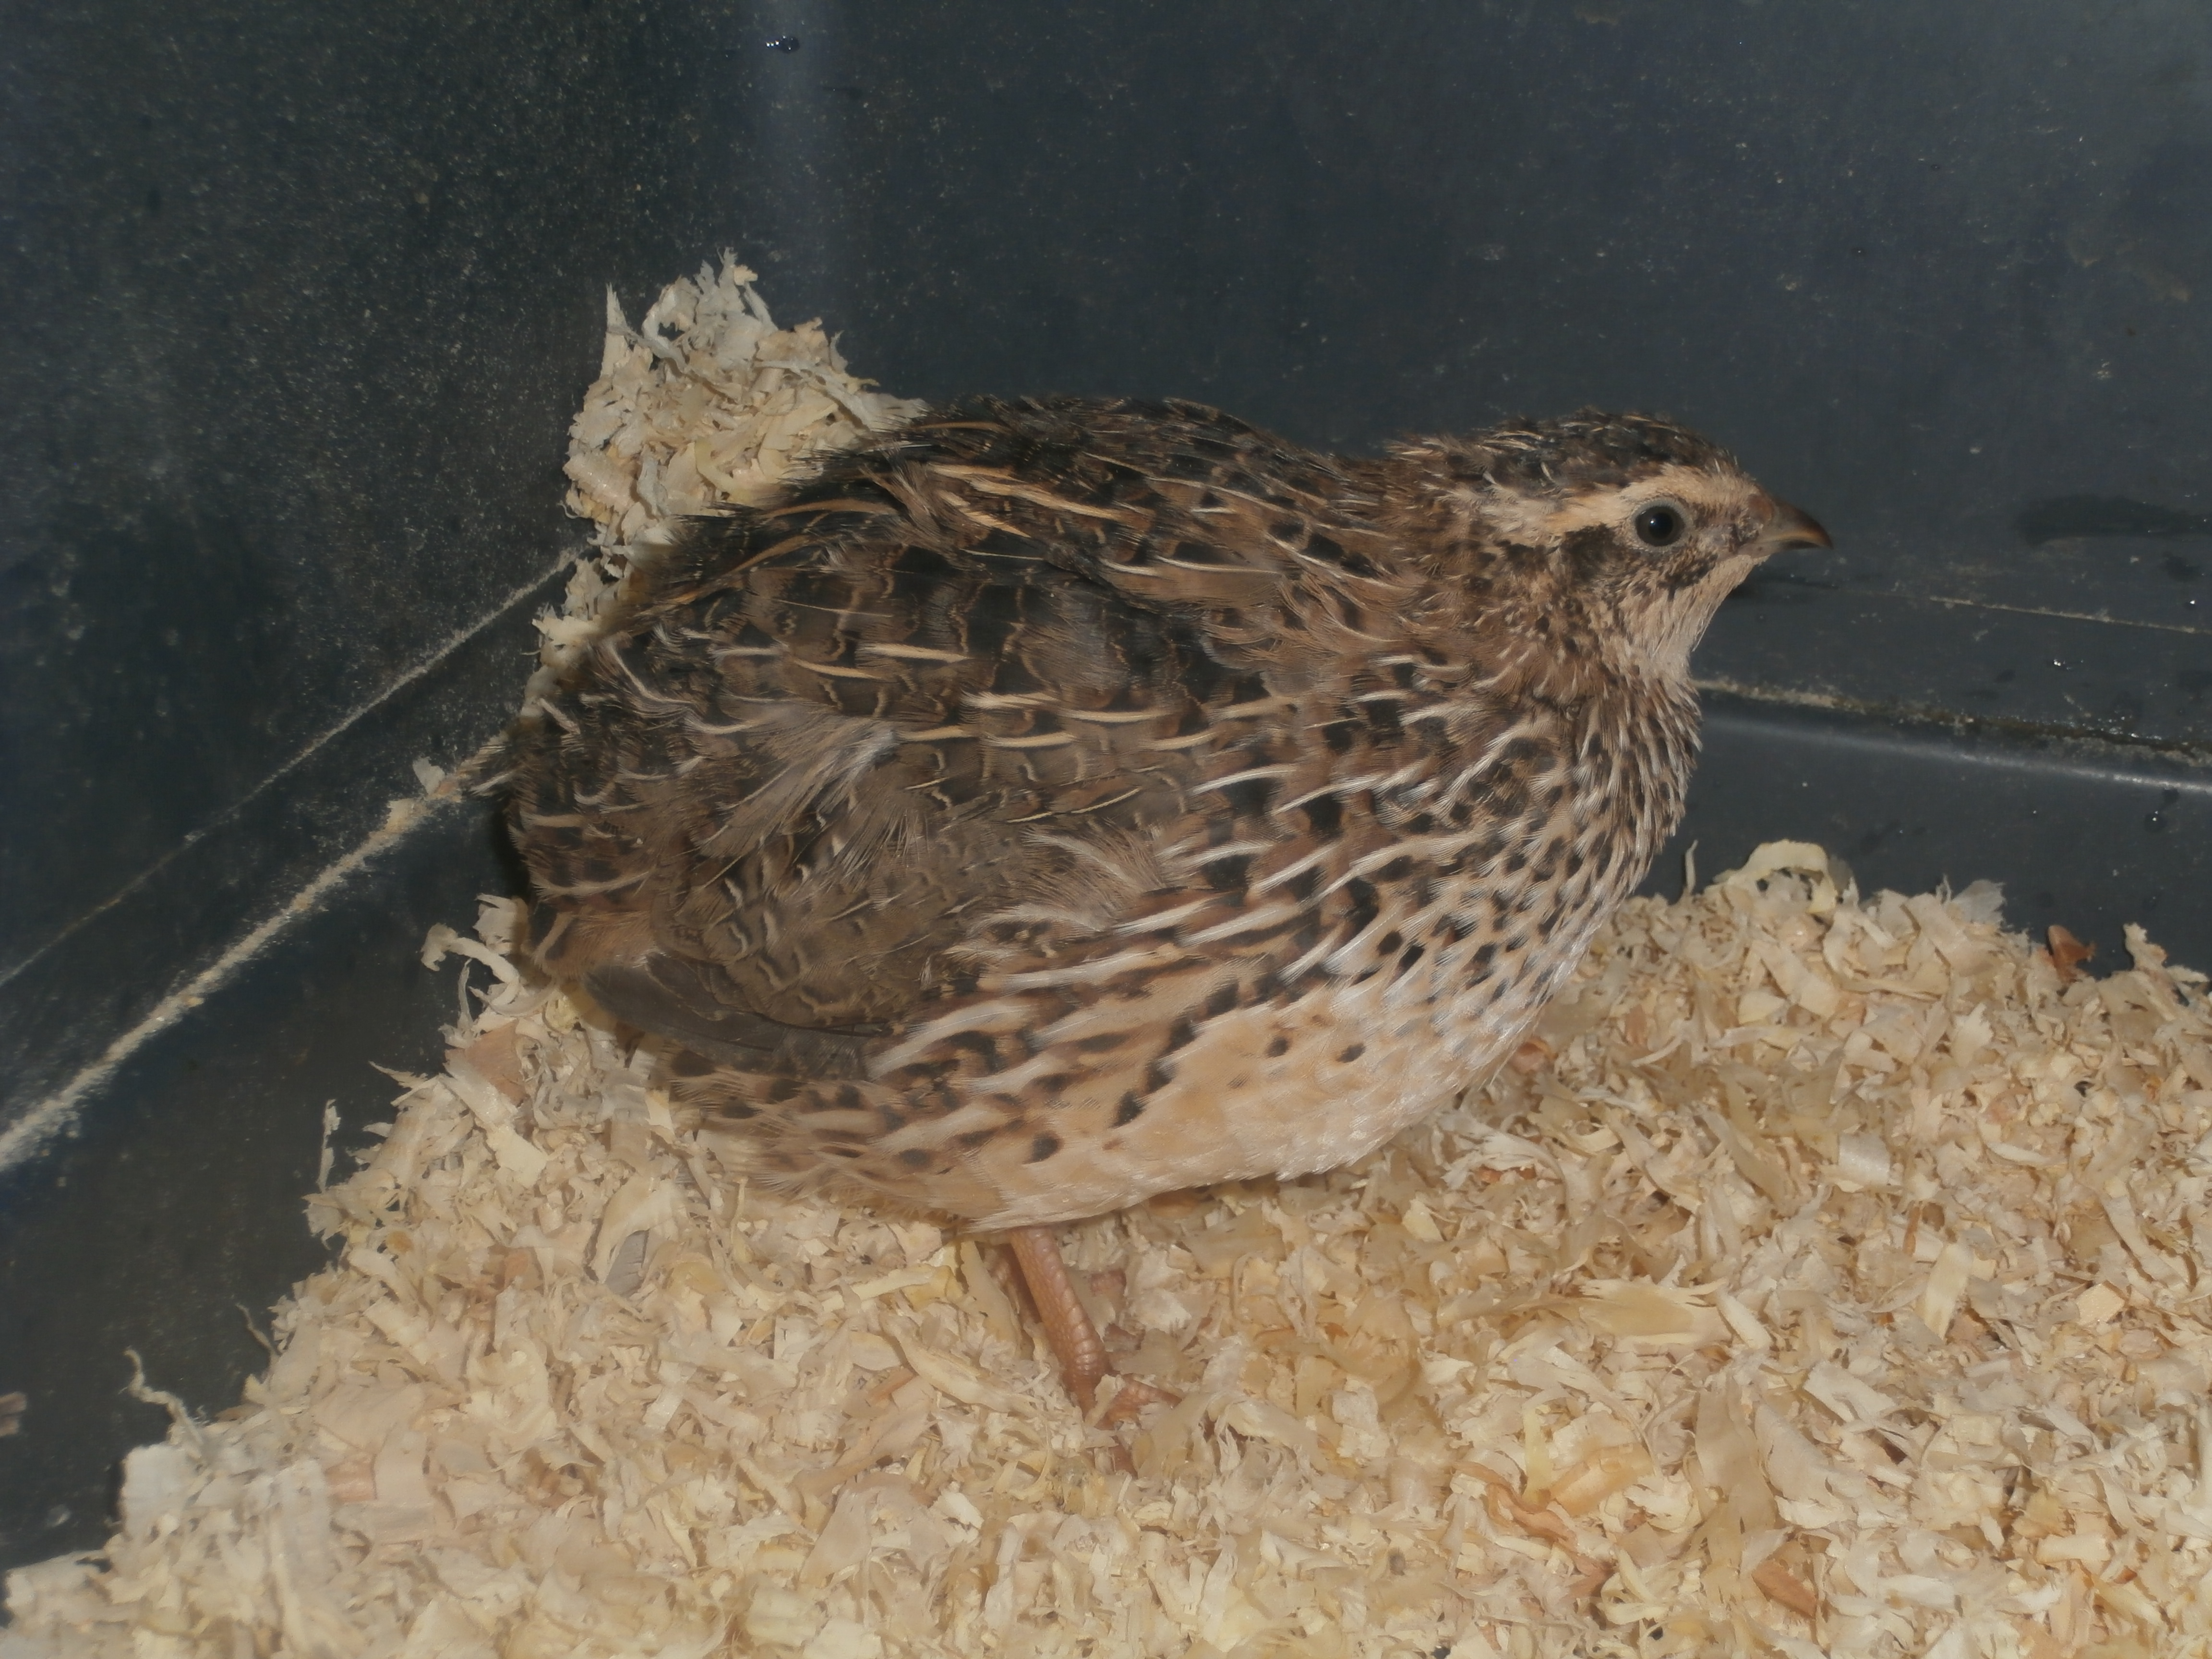 Female coturnix quail